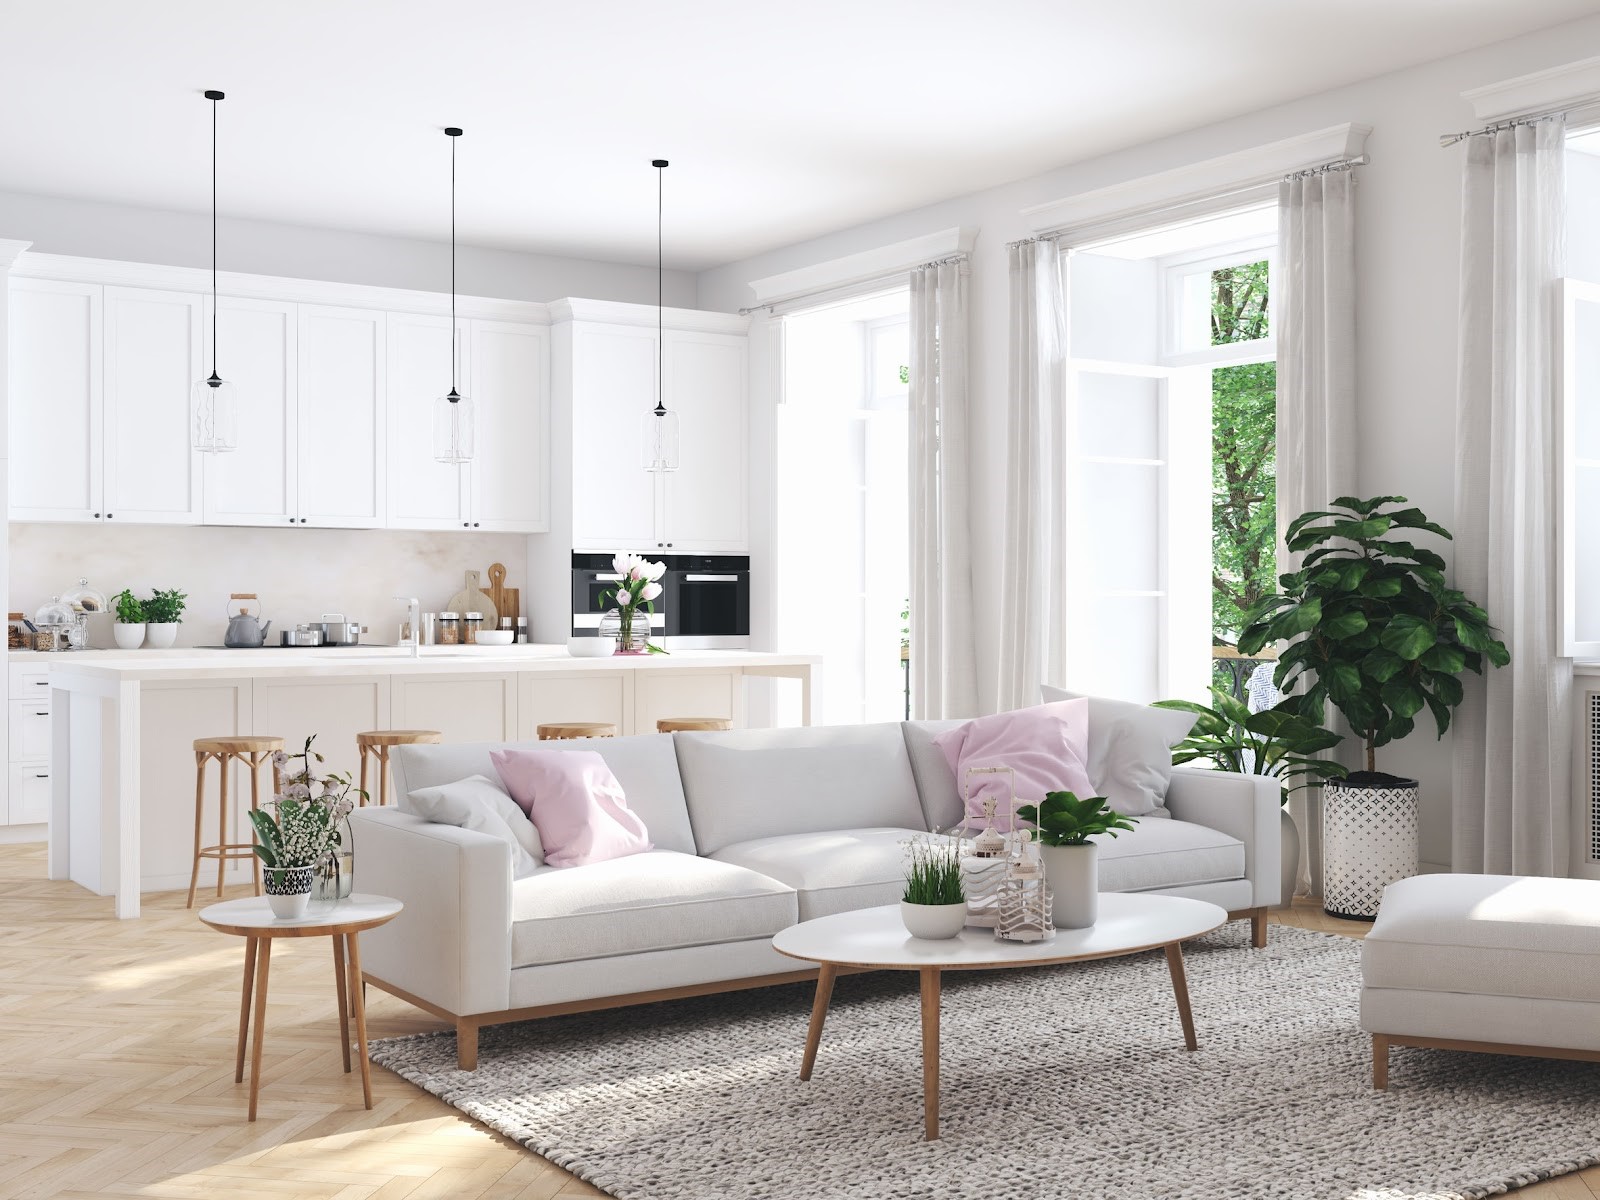 Rénovation de votre intérieur avec des meubles tendances